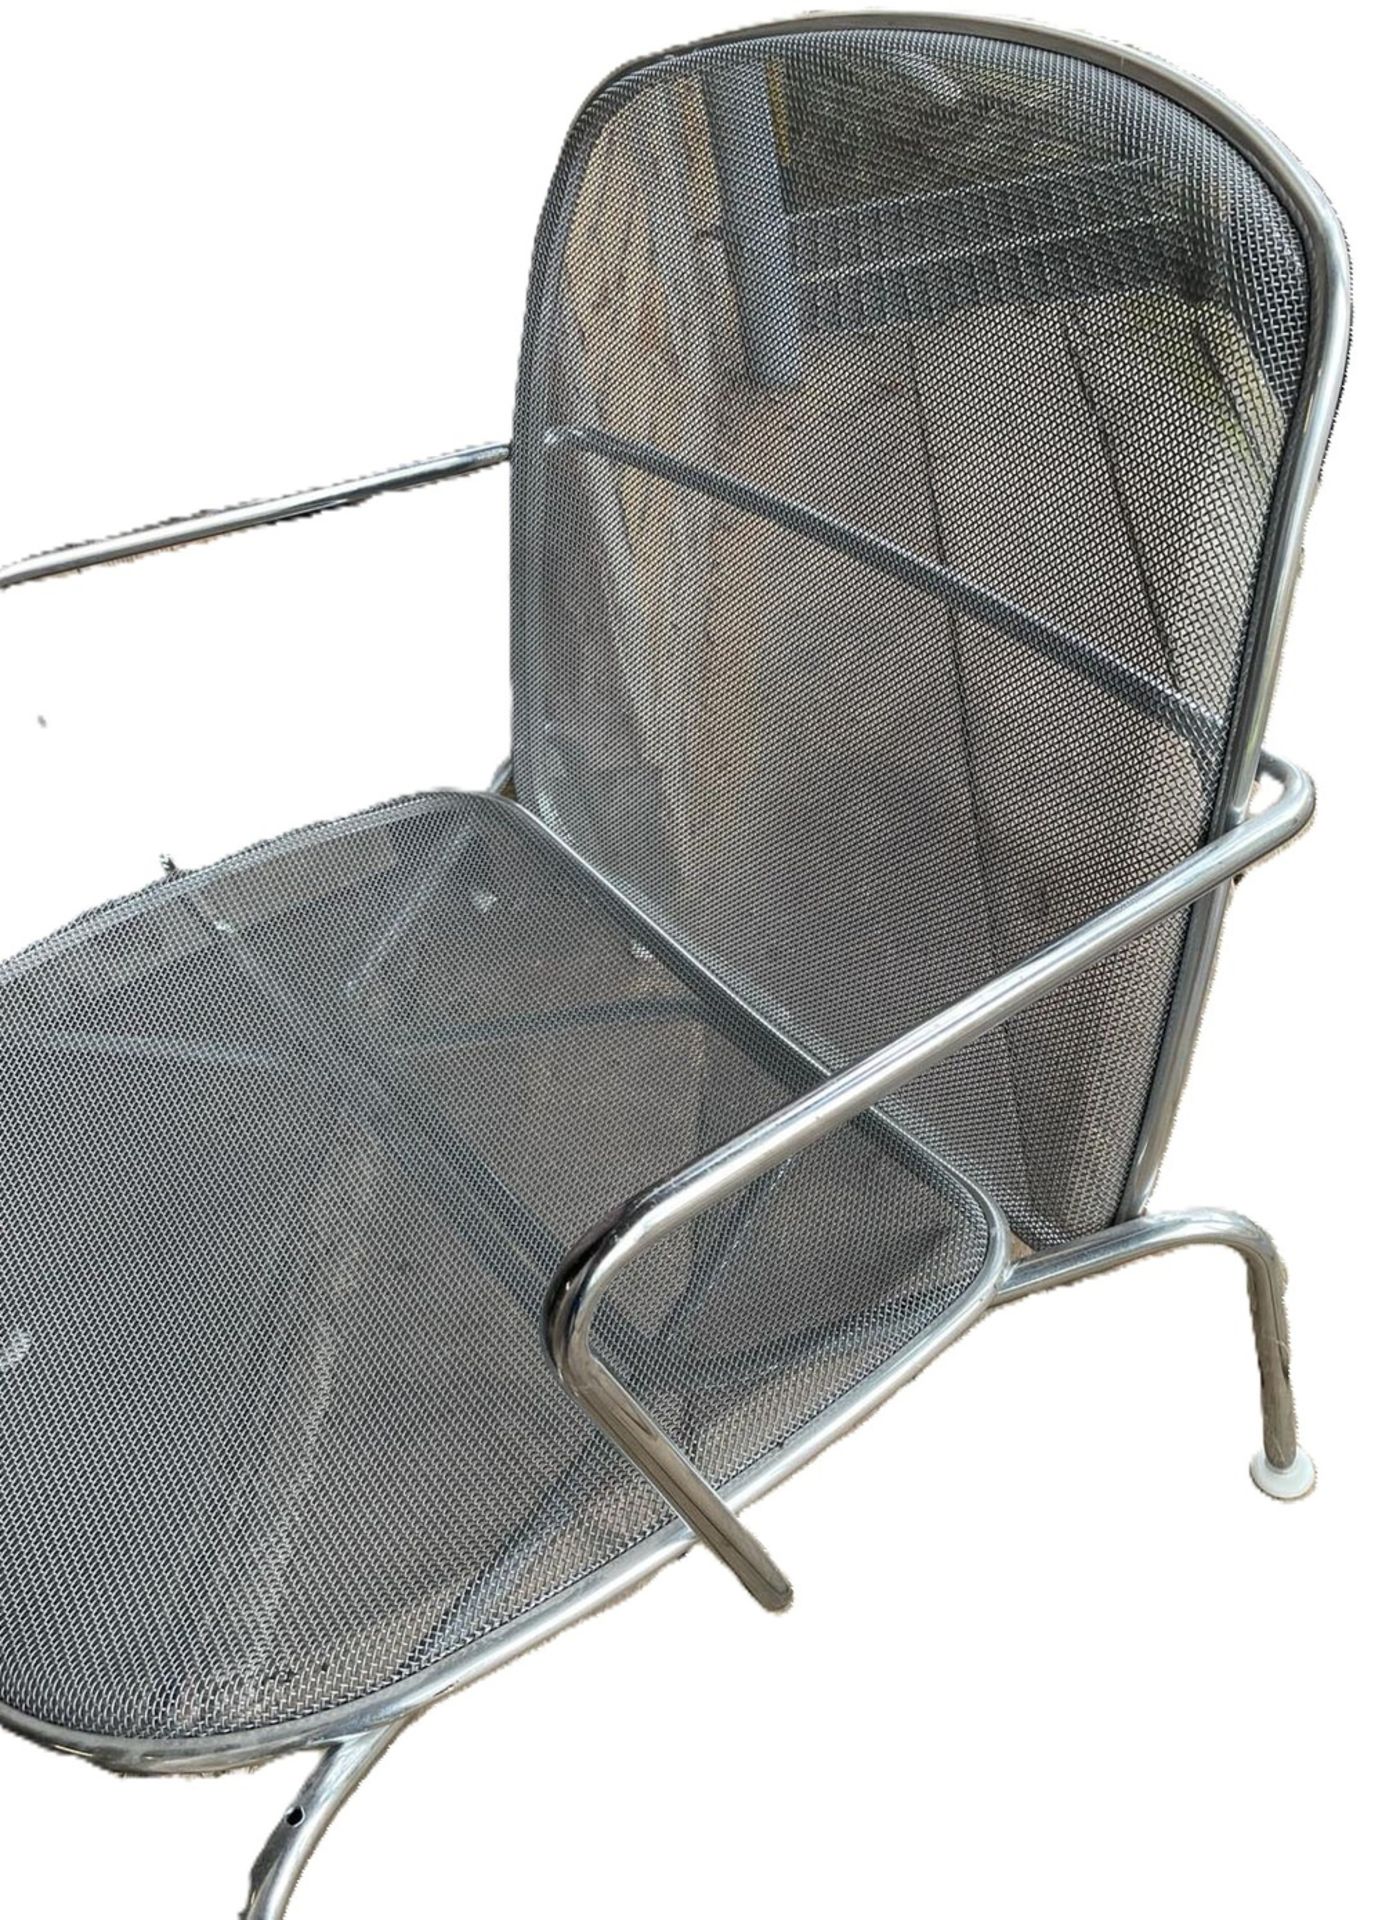 wohl Firma Knoll, Metall Longchair, Sitzfläche abnehmbar, Designklassiker aus den 80er Jahren. - Image 2 of 3